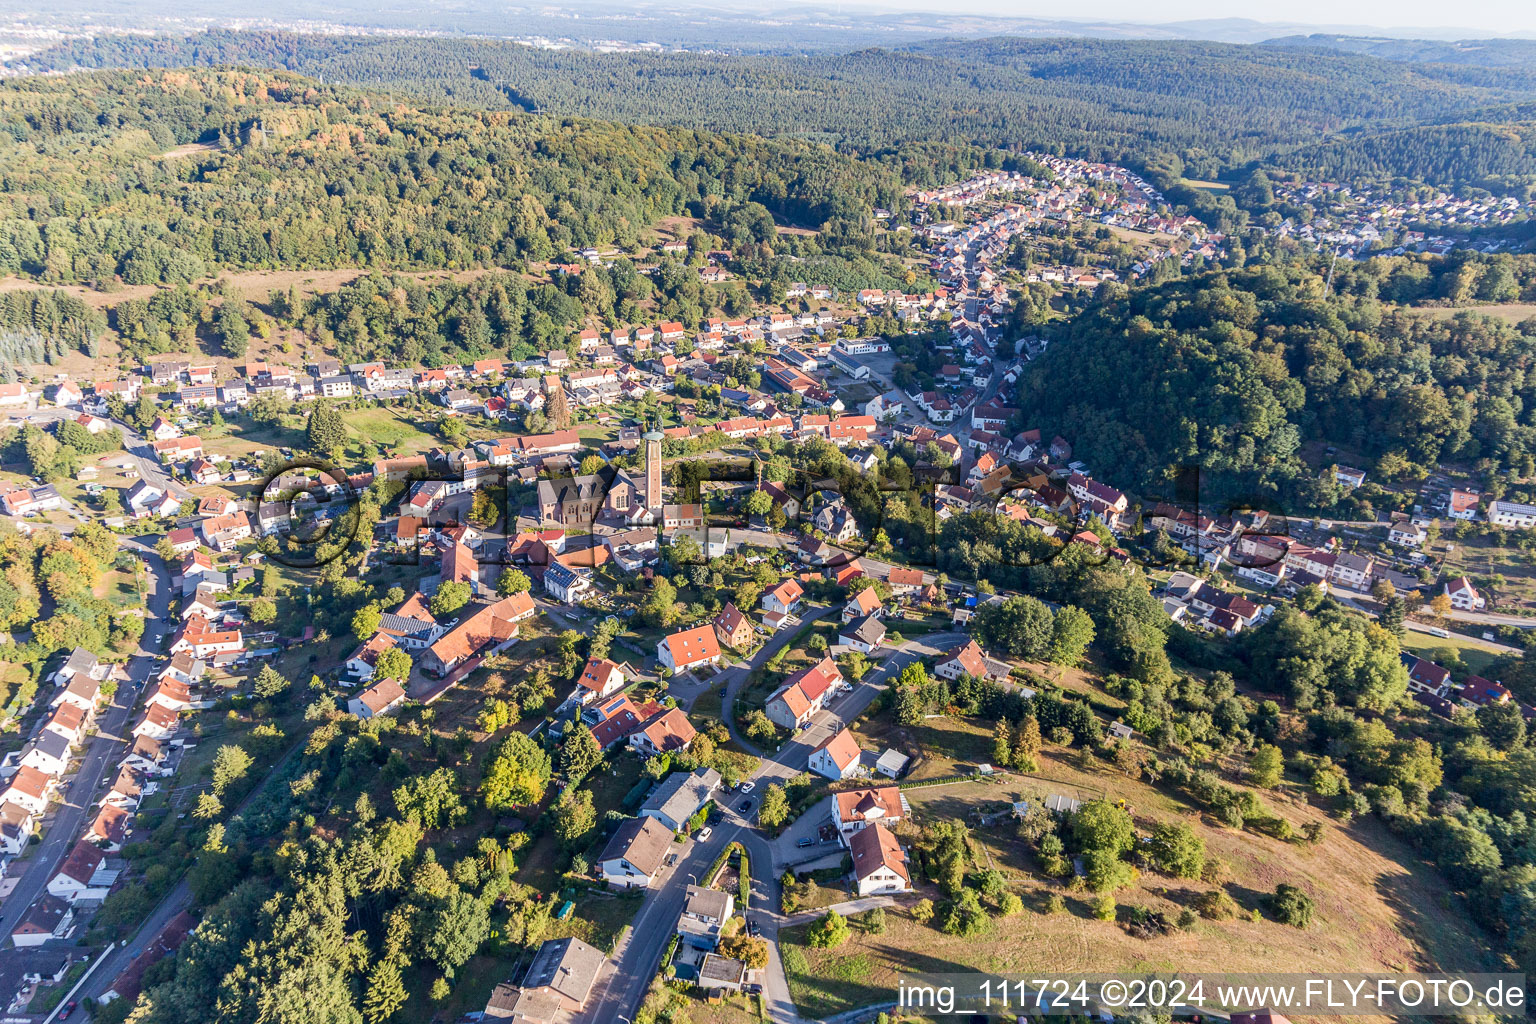 Ortsansicht der Straßen und Häuser der Wohngebiete in der von Bergen umgebenen Tallandschaft in Kirrberg im Bundesland Saarland, Deutschland